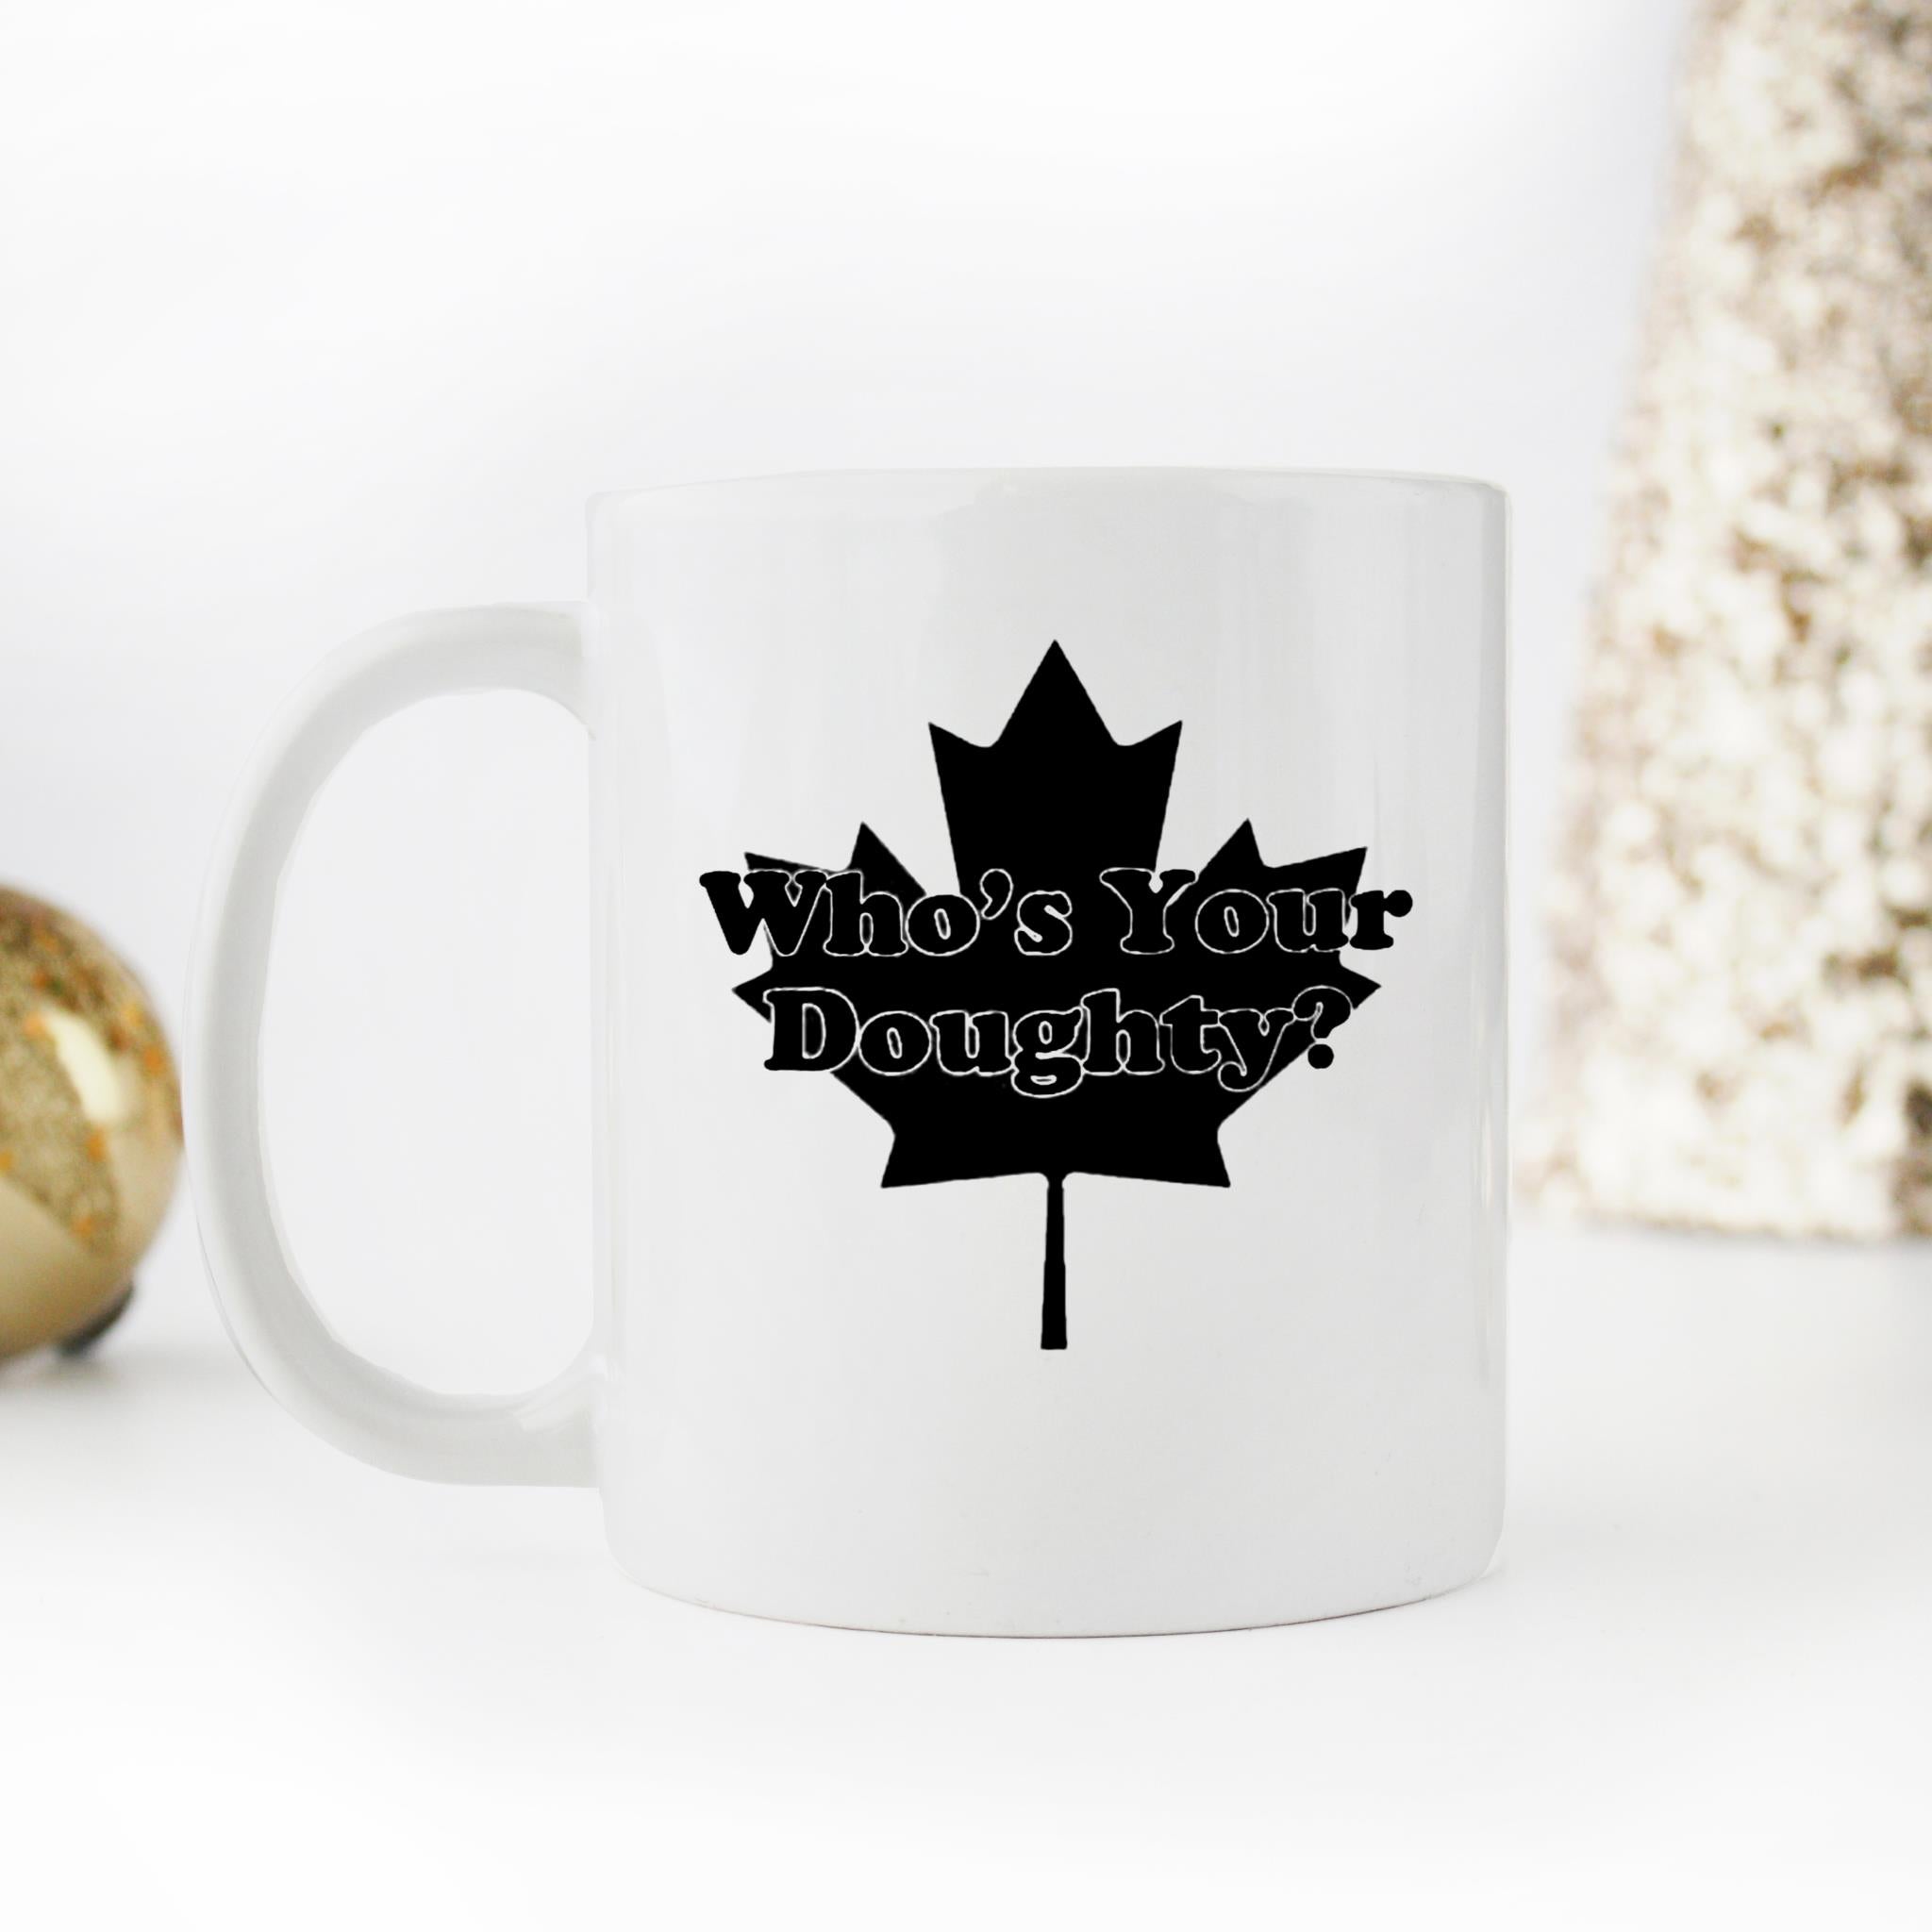 Skitongifts Funny Ceramic Novelty Coffee Mug Whos Your Doughty La Kings Fan Drew Hockey BUpBcVX